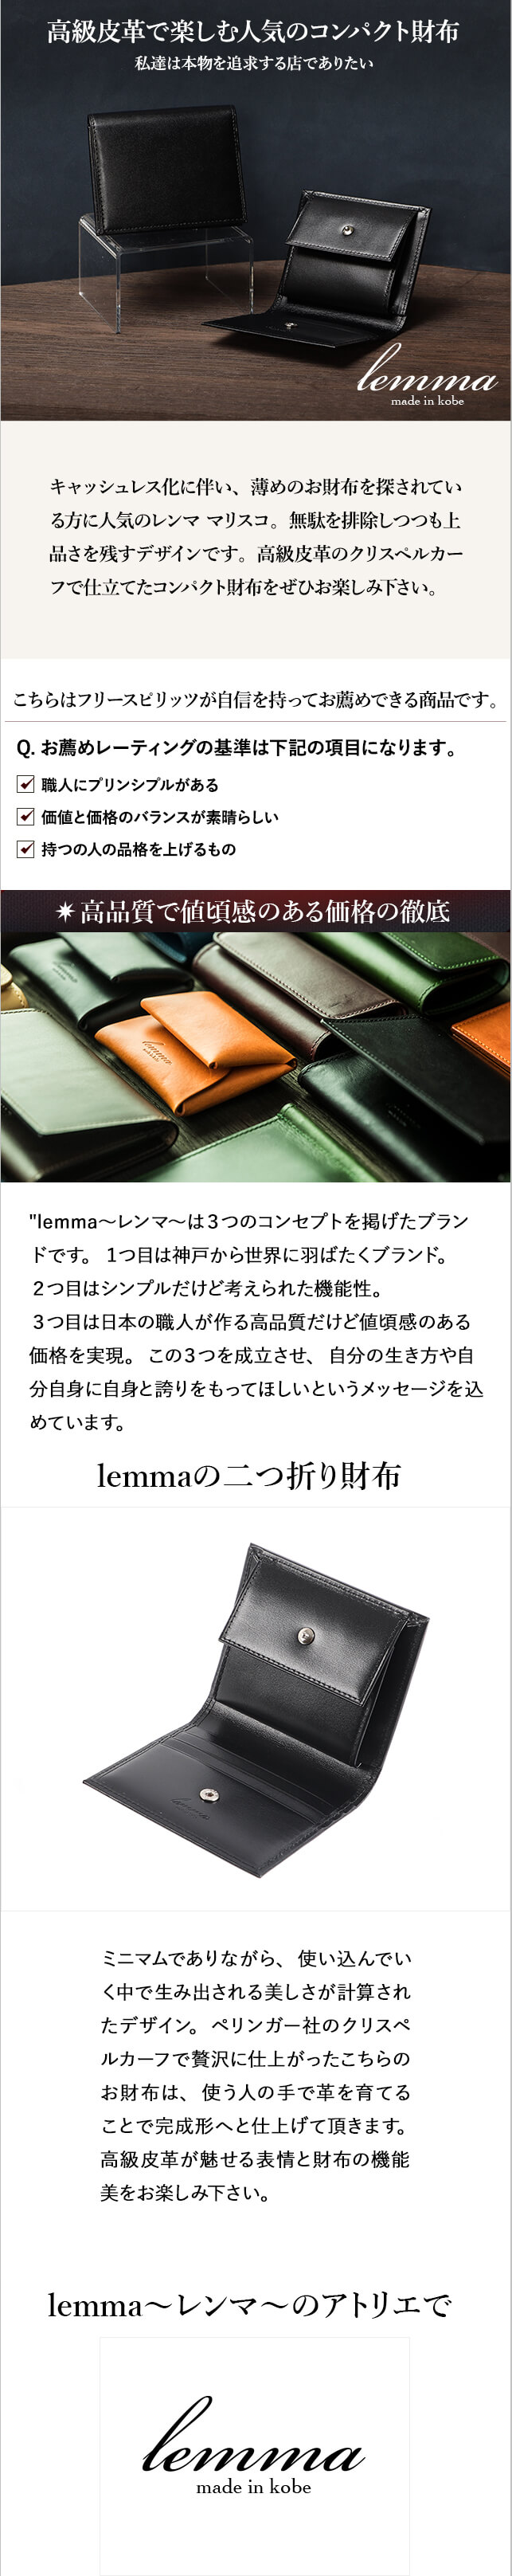 【新品未開封品】lemma Marisco レンマ マリスコ ネイビー